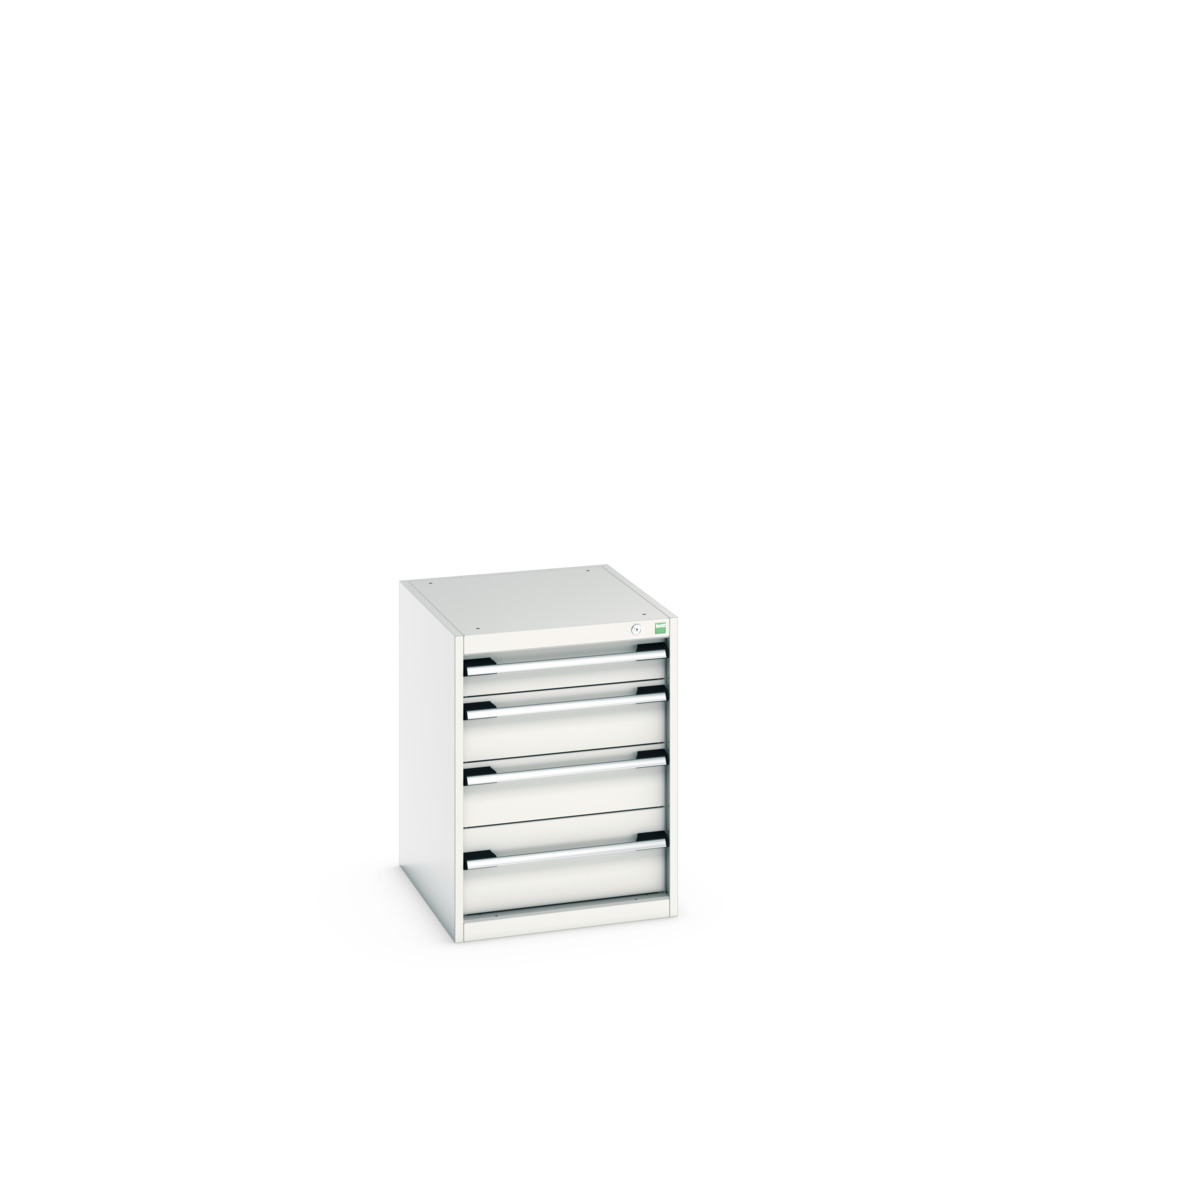 40018025.16V - cubio drawer cabinet